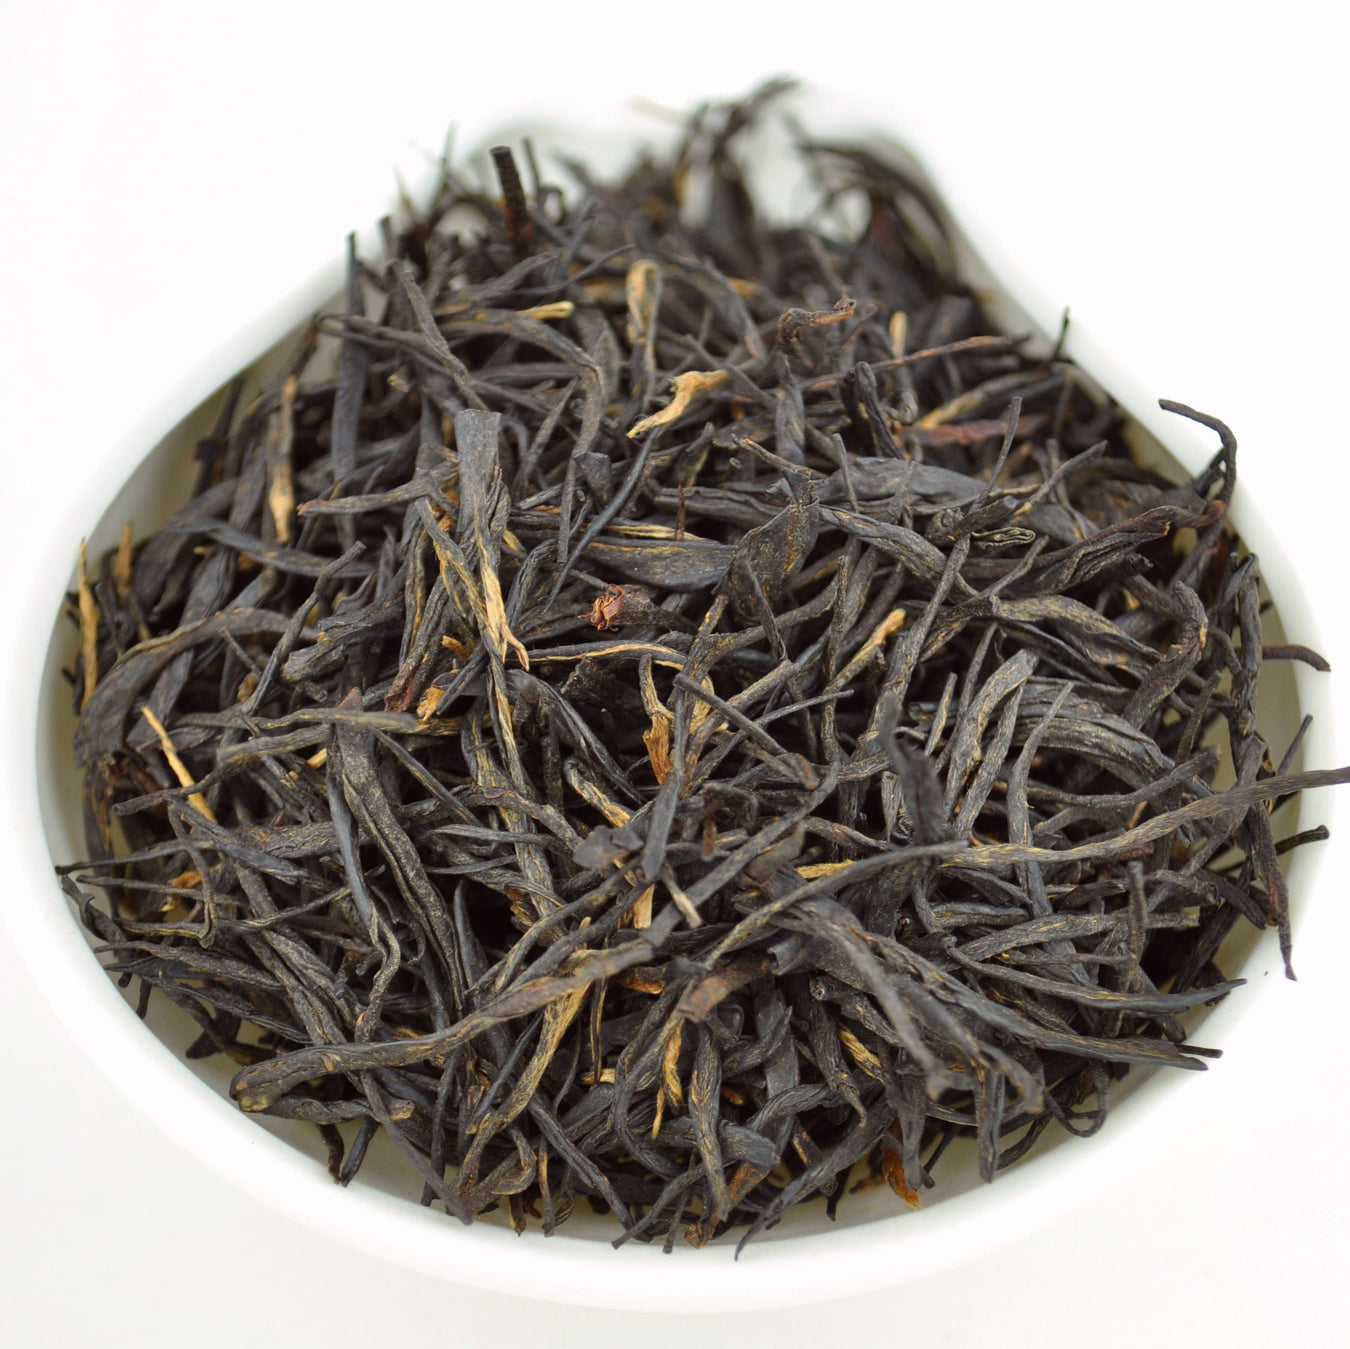 Purple Leaf "Zi Cha" Black Tea